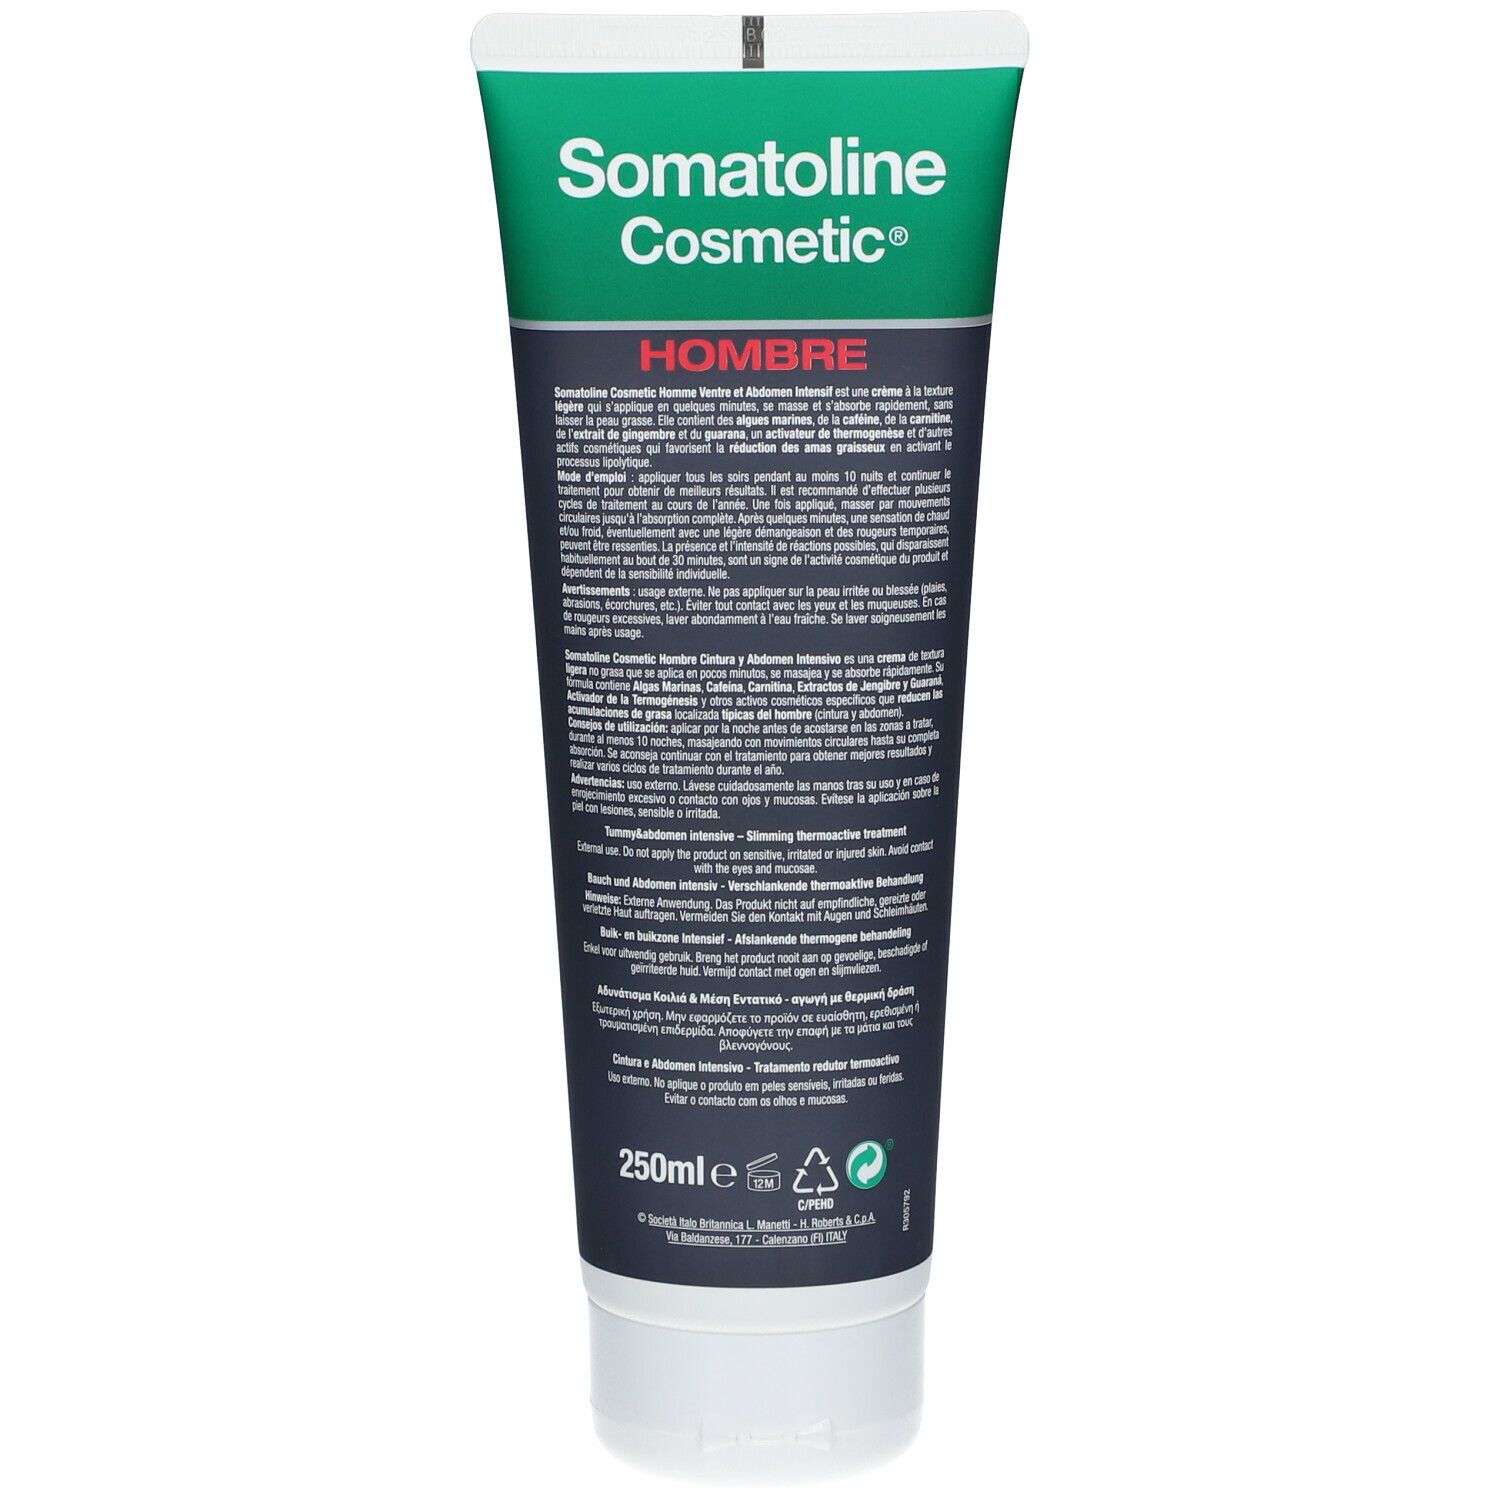 Somatoline Cosmetic® Bauch und Abdomen 7 Nächte